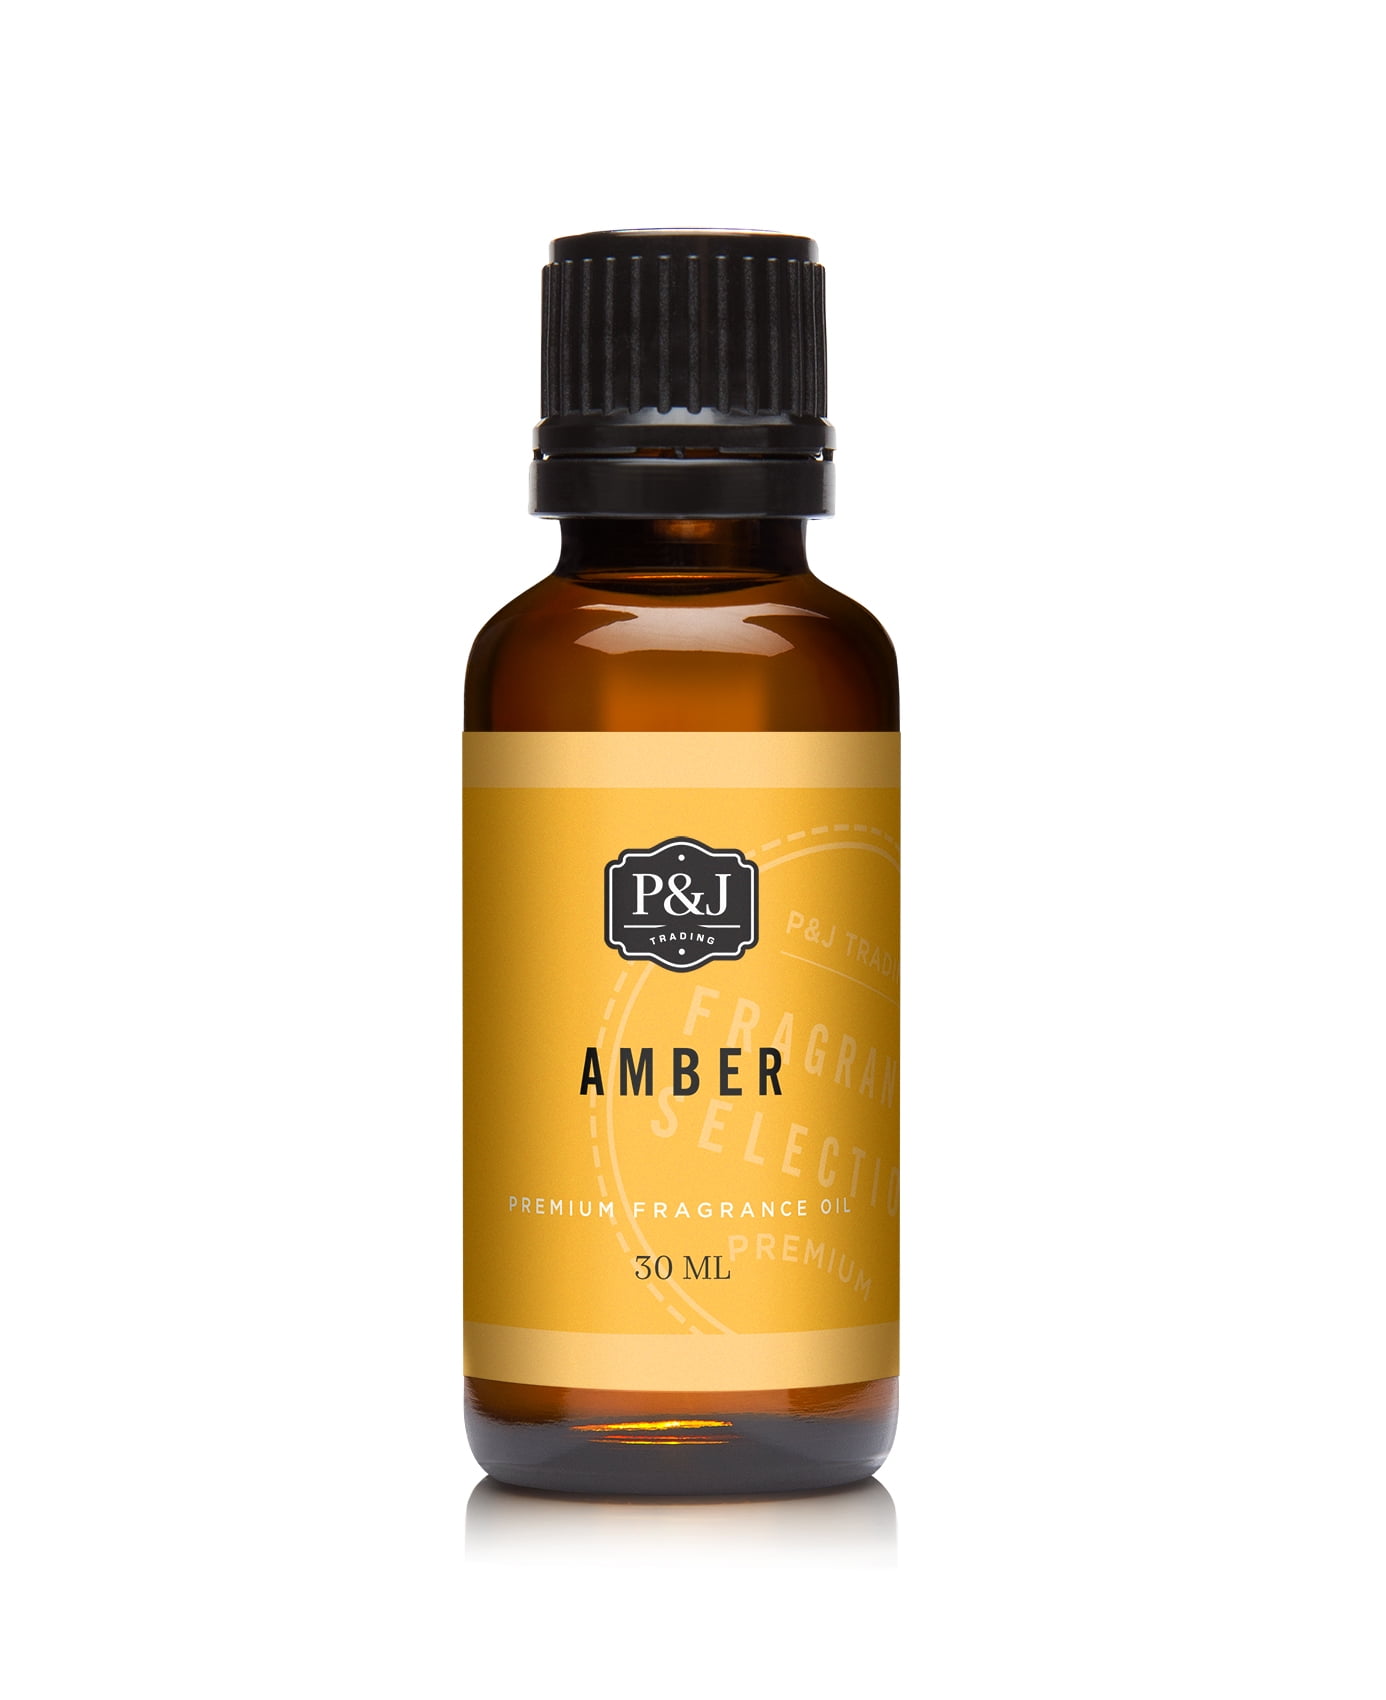 P&j Trading Amber Fragrance Oil - Premium Grade Scented Oil - 30ml